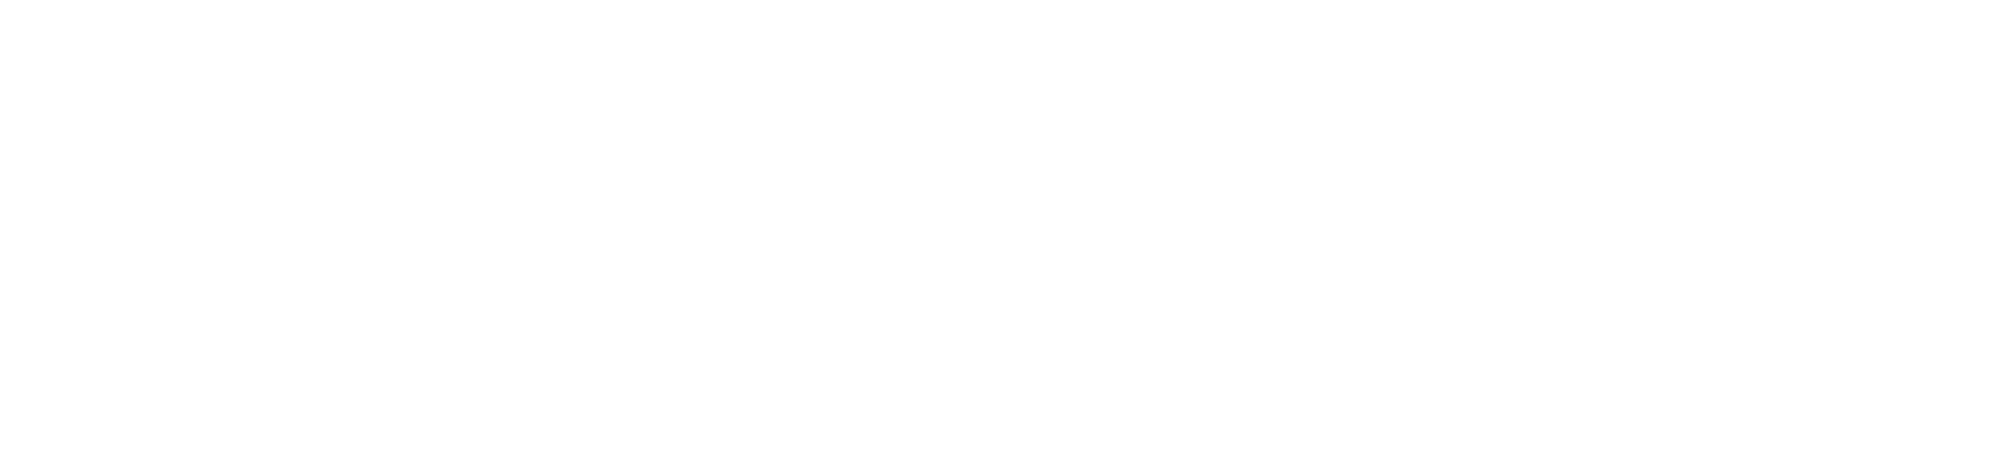 logo_bigcommerce